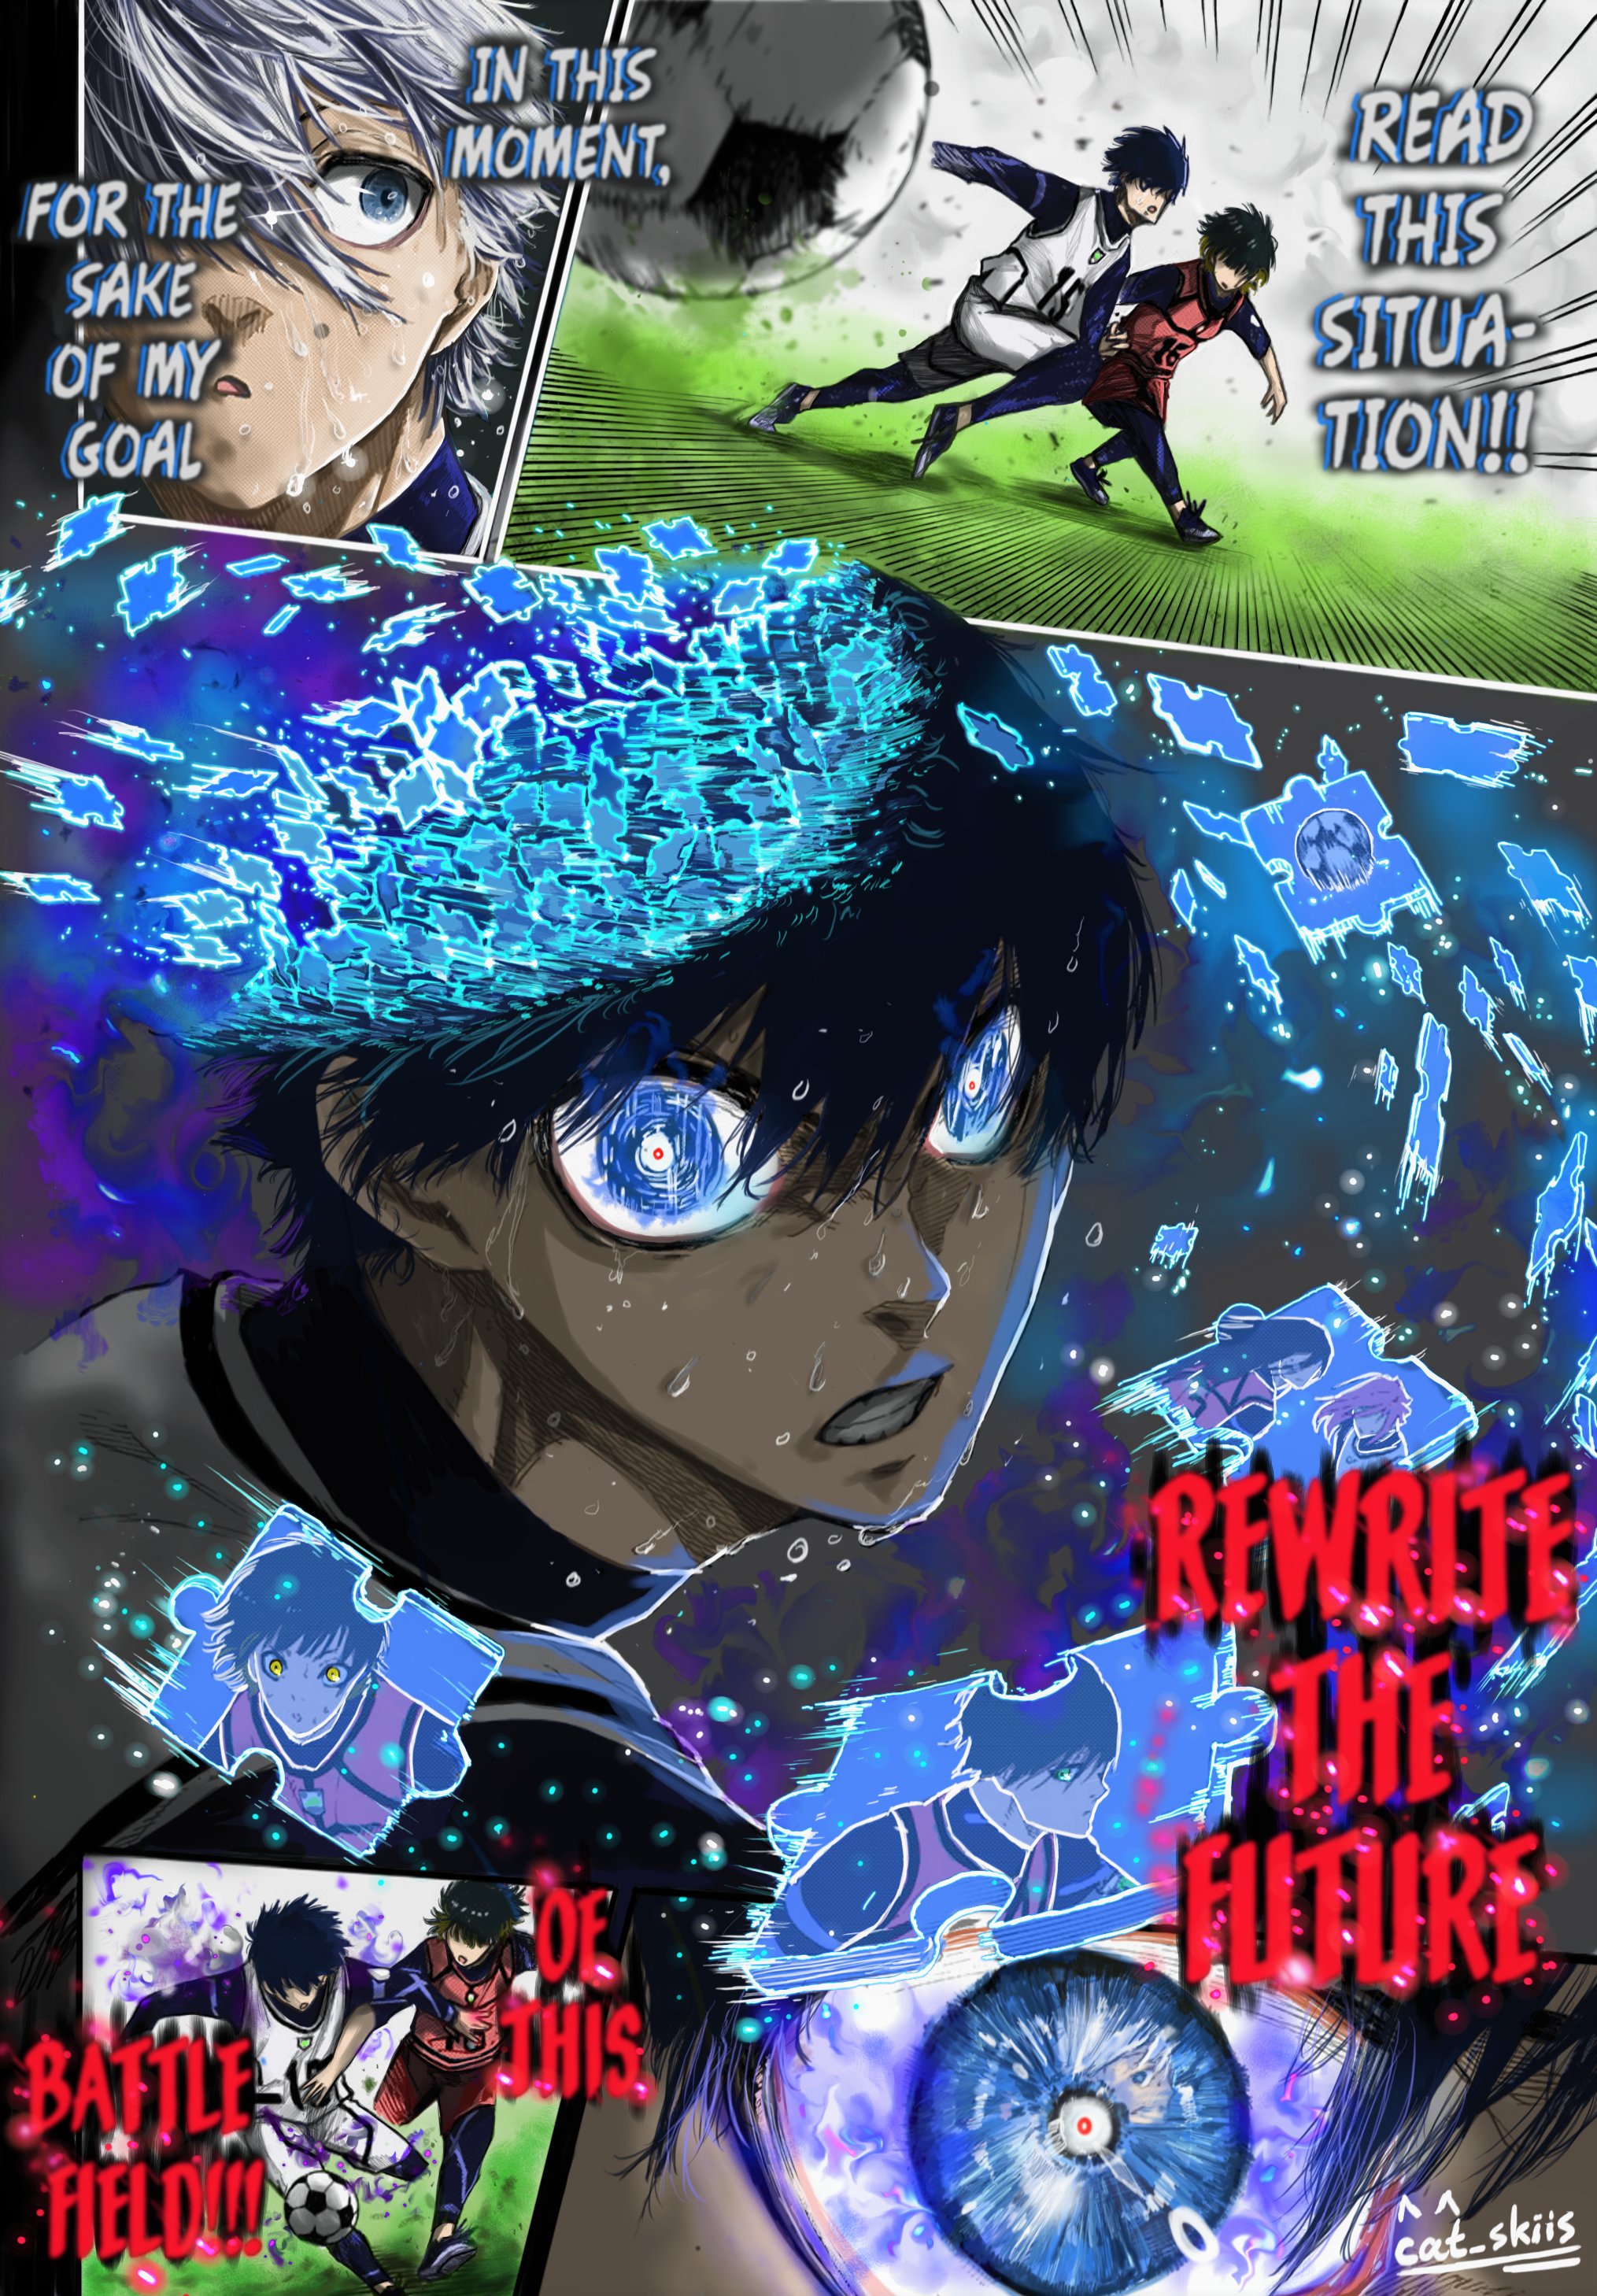 Shrimp on X: Puzzle Piece - Blue Lock Chapter 76 Manga Coloring - #BlueLock  #mangacoloring #manga #anime  / X